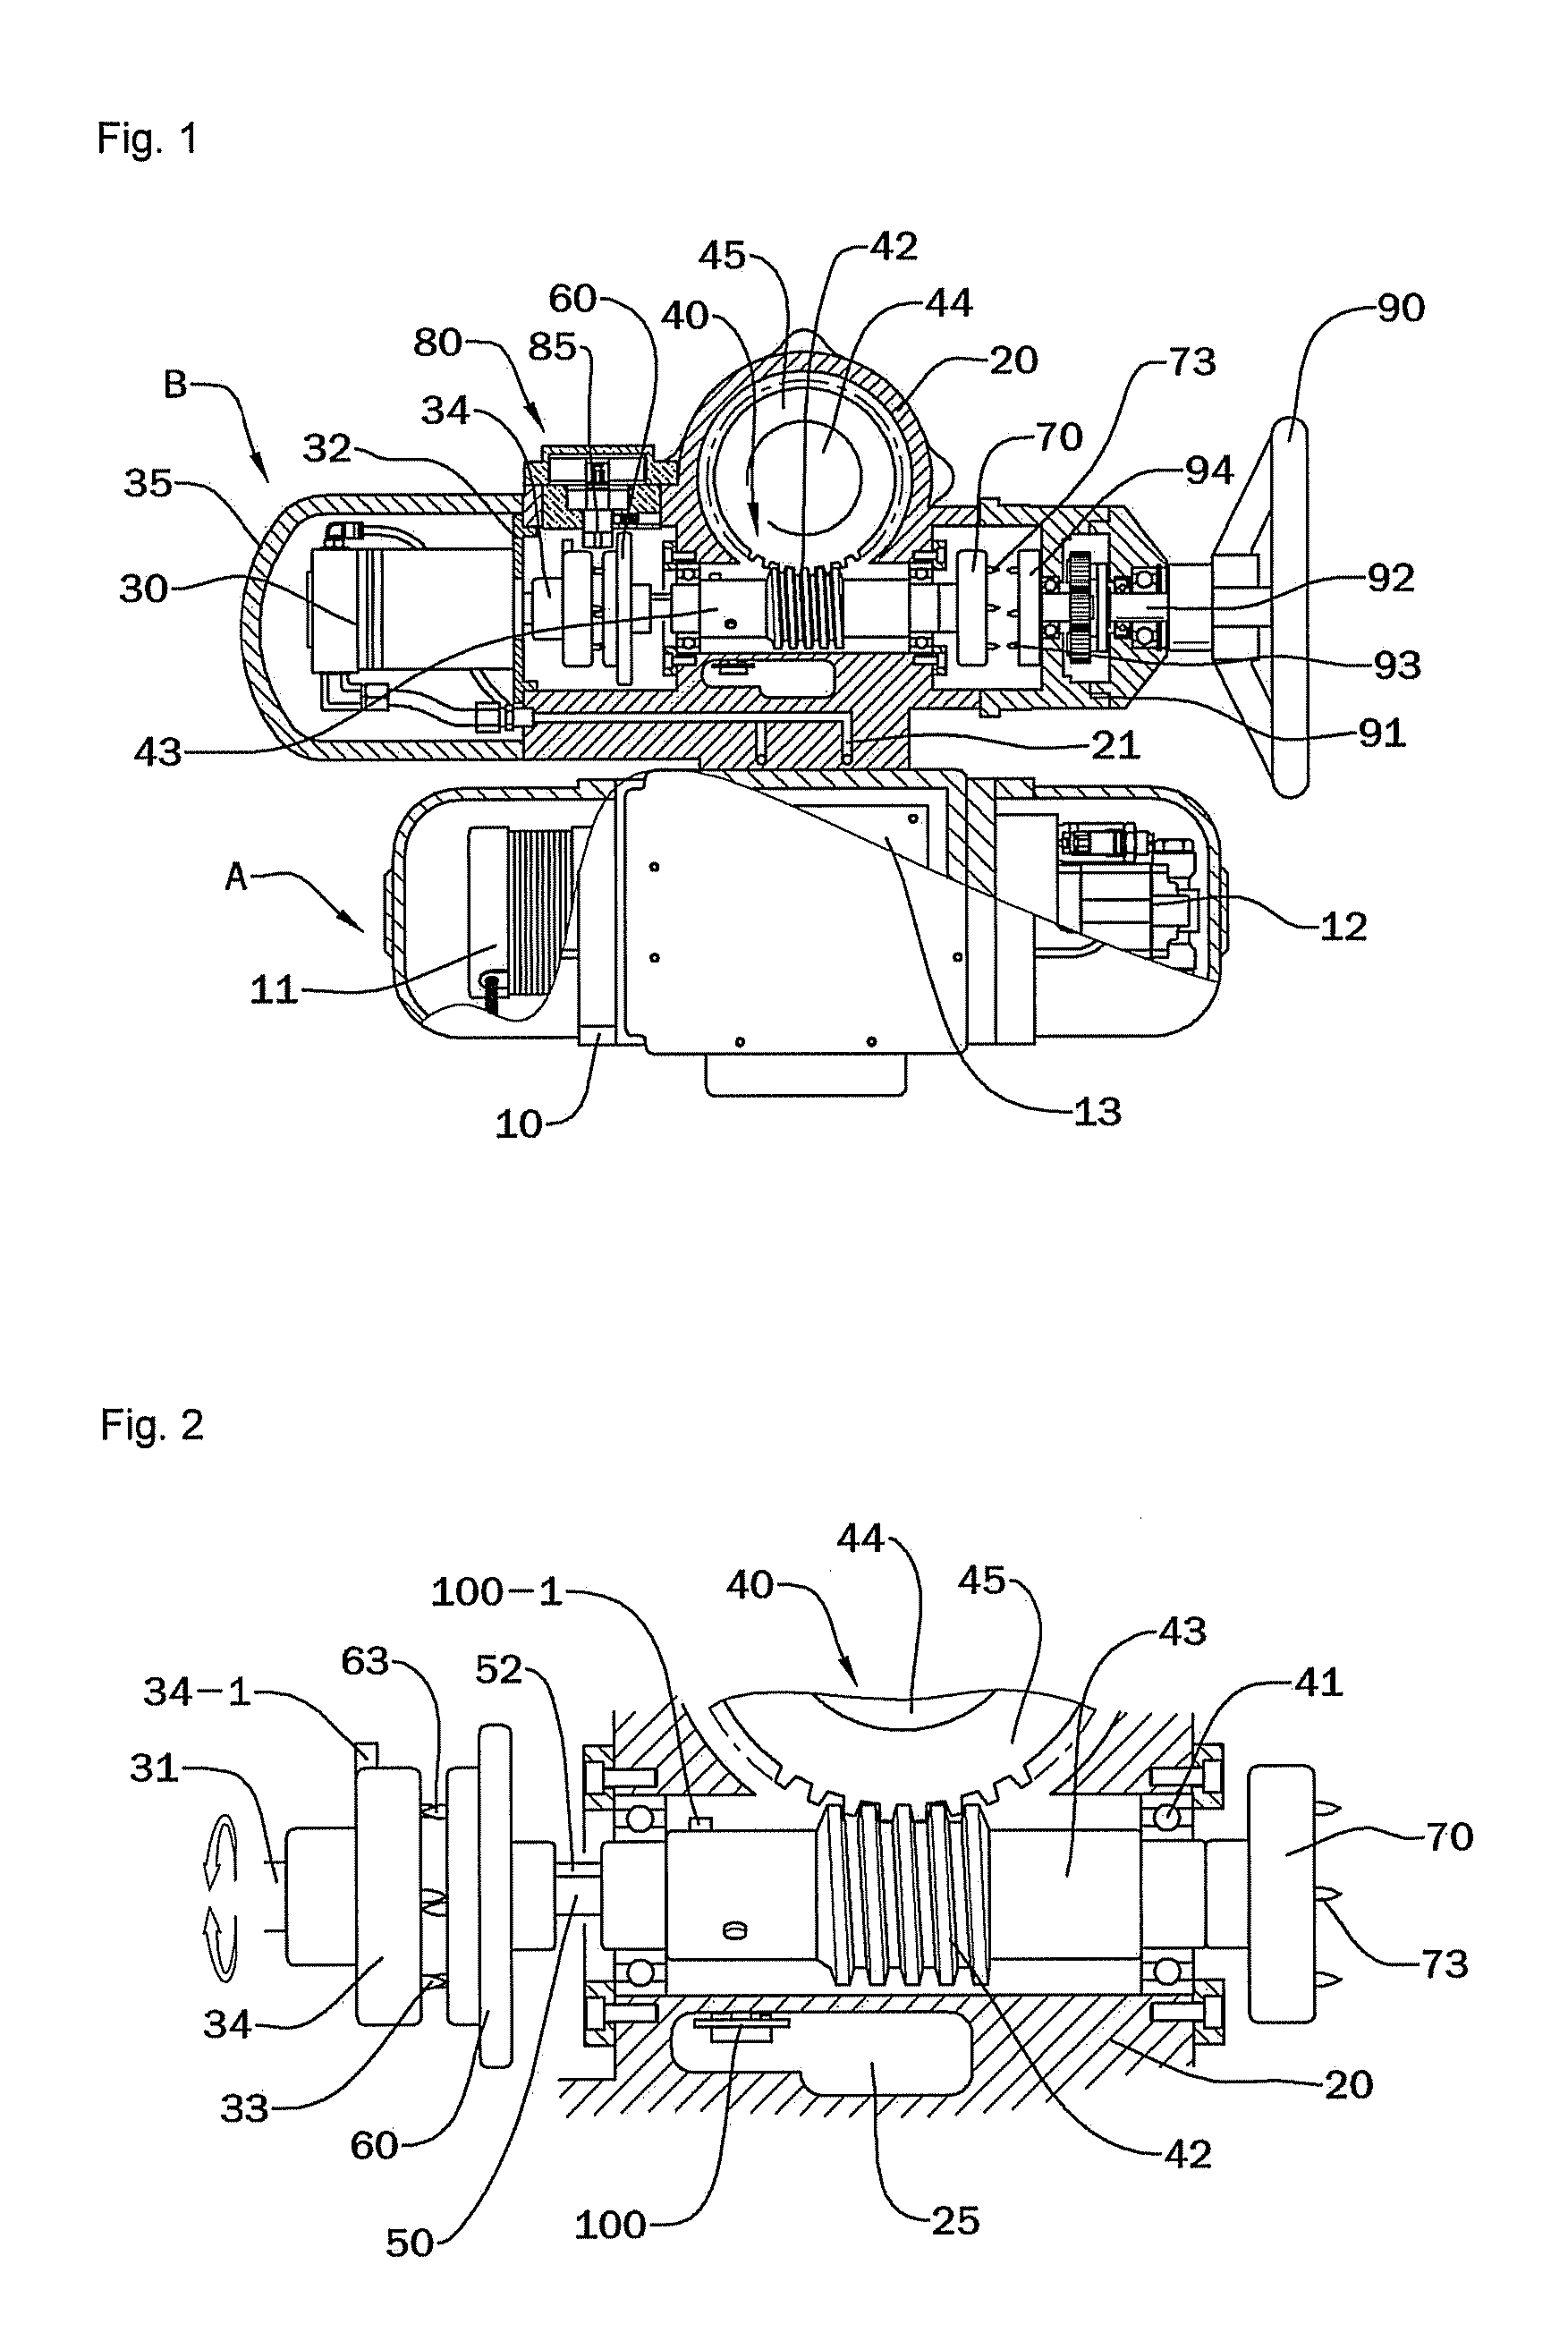 Multi-turn hydraulic actuator